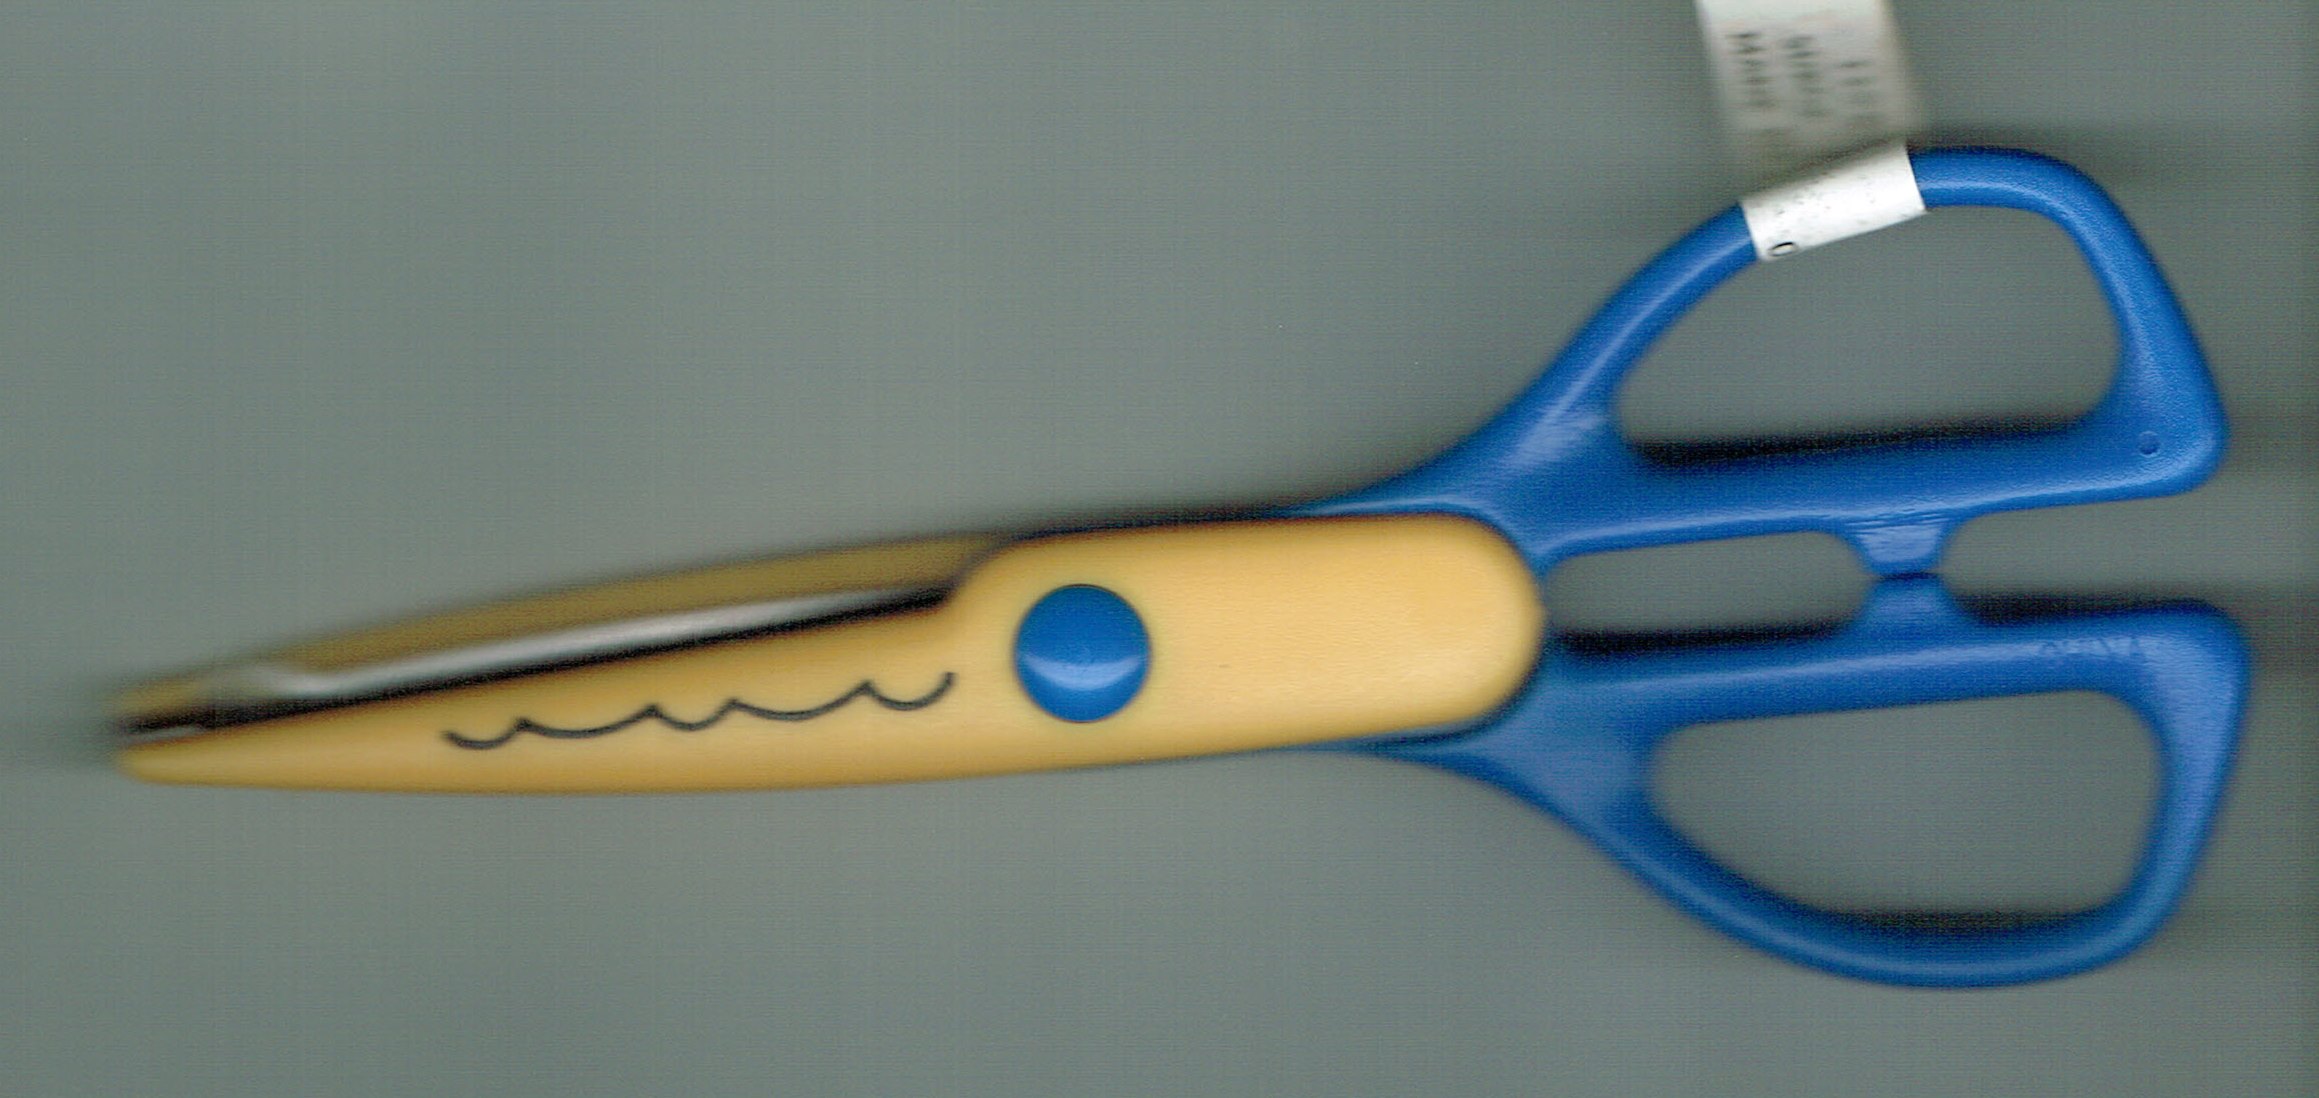 Darice Crafting Scissors - Surger Cut - 7" inches